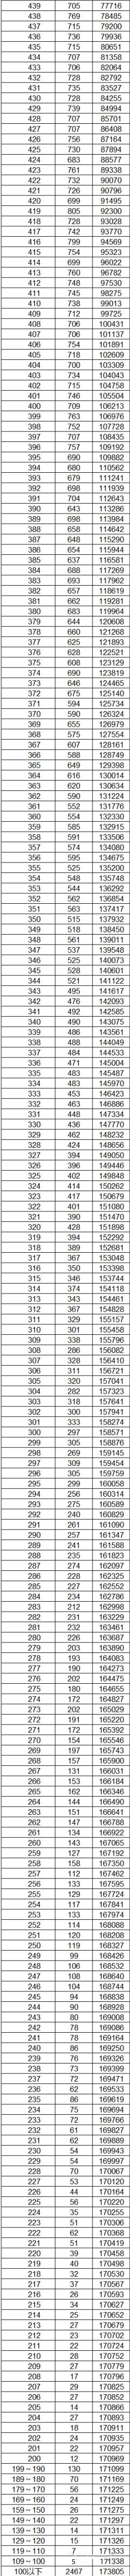 2023云南高考一分一段表公布 分数位次排名【文科+理科】